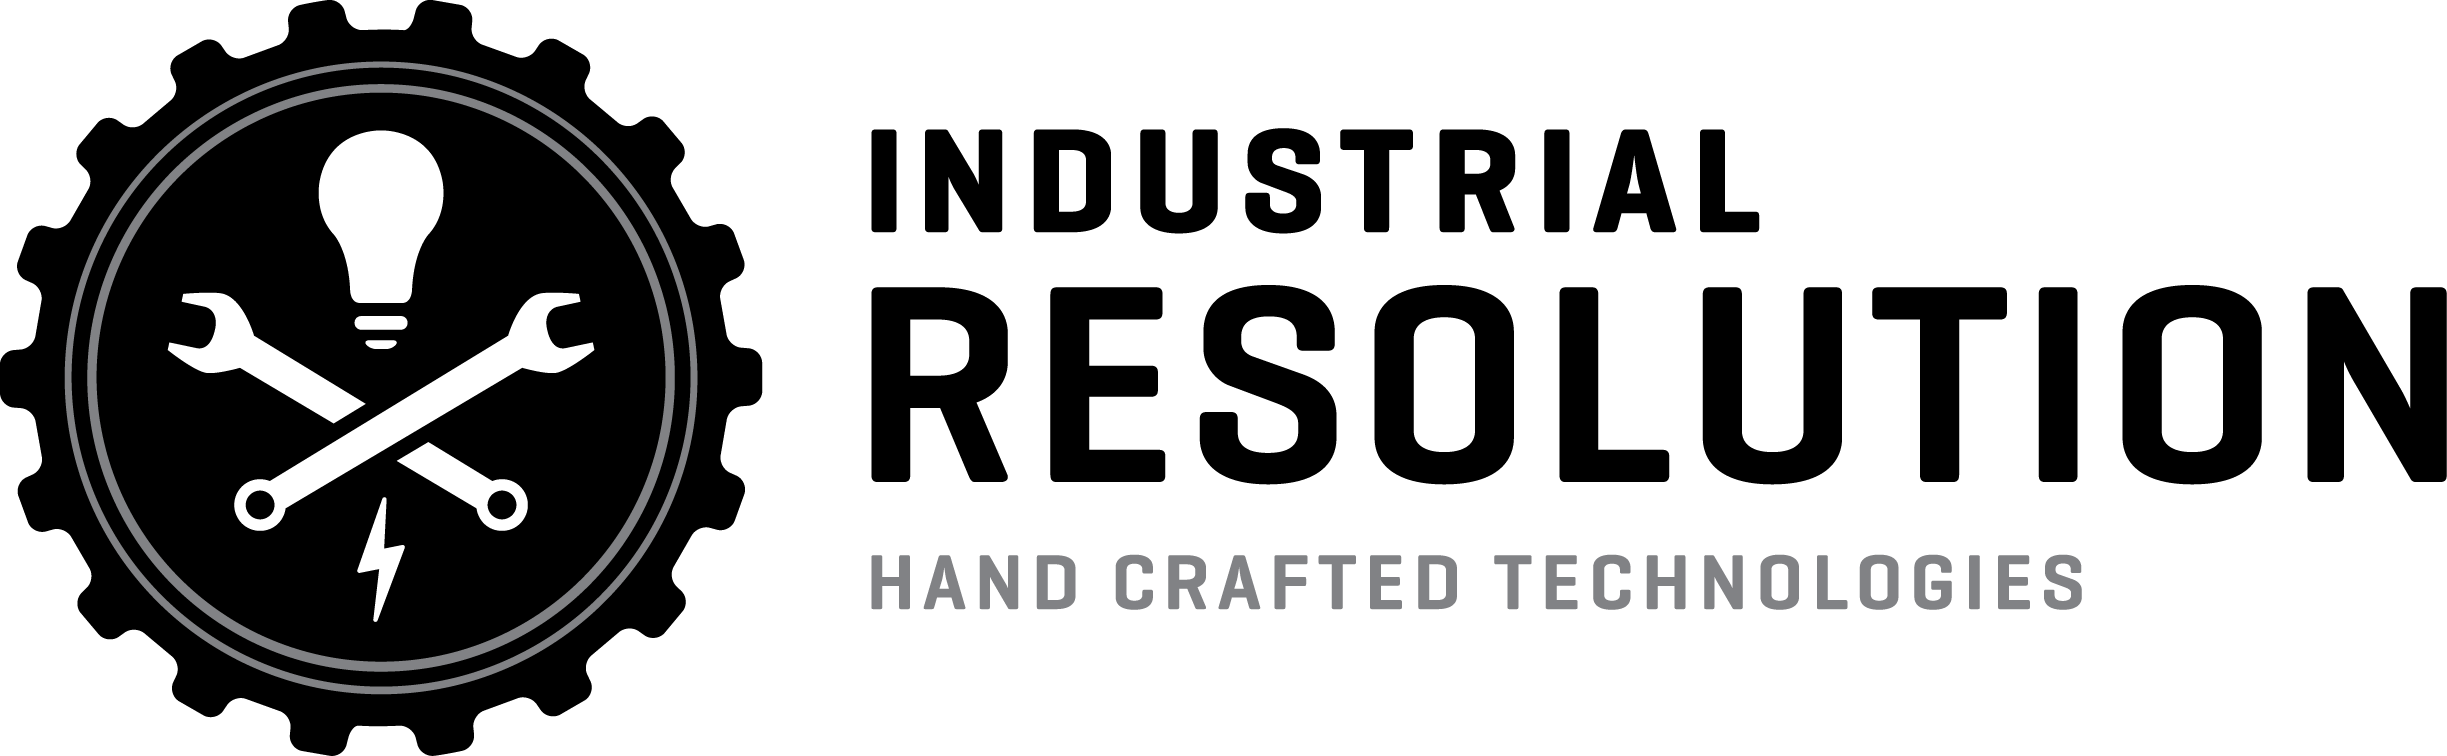 Resolution Logo - Industrial Resolution